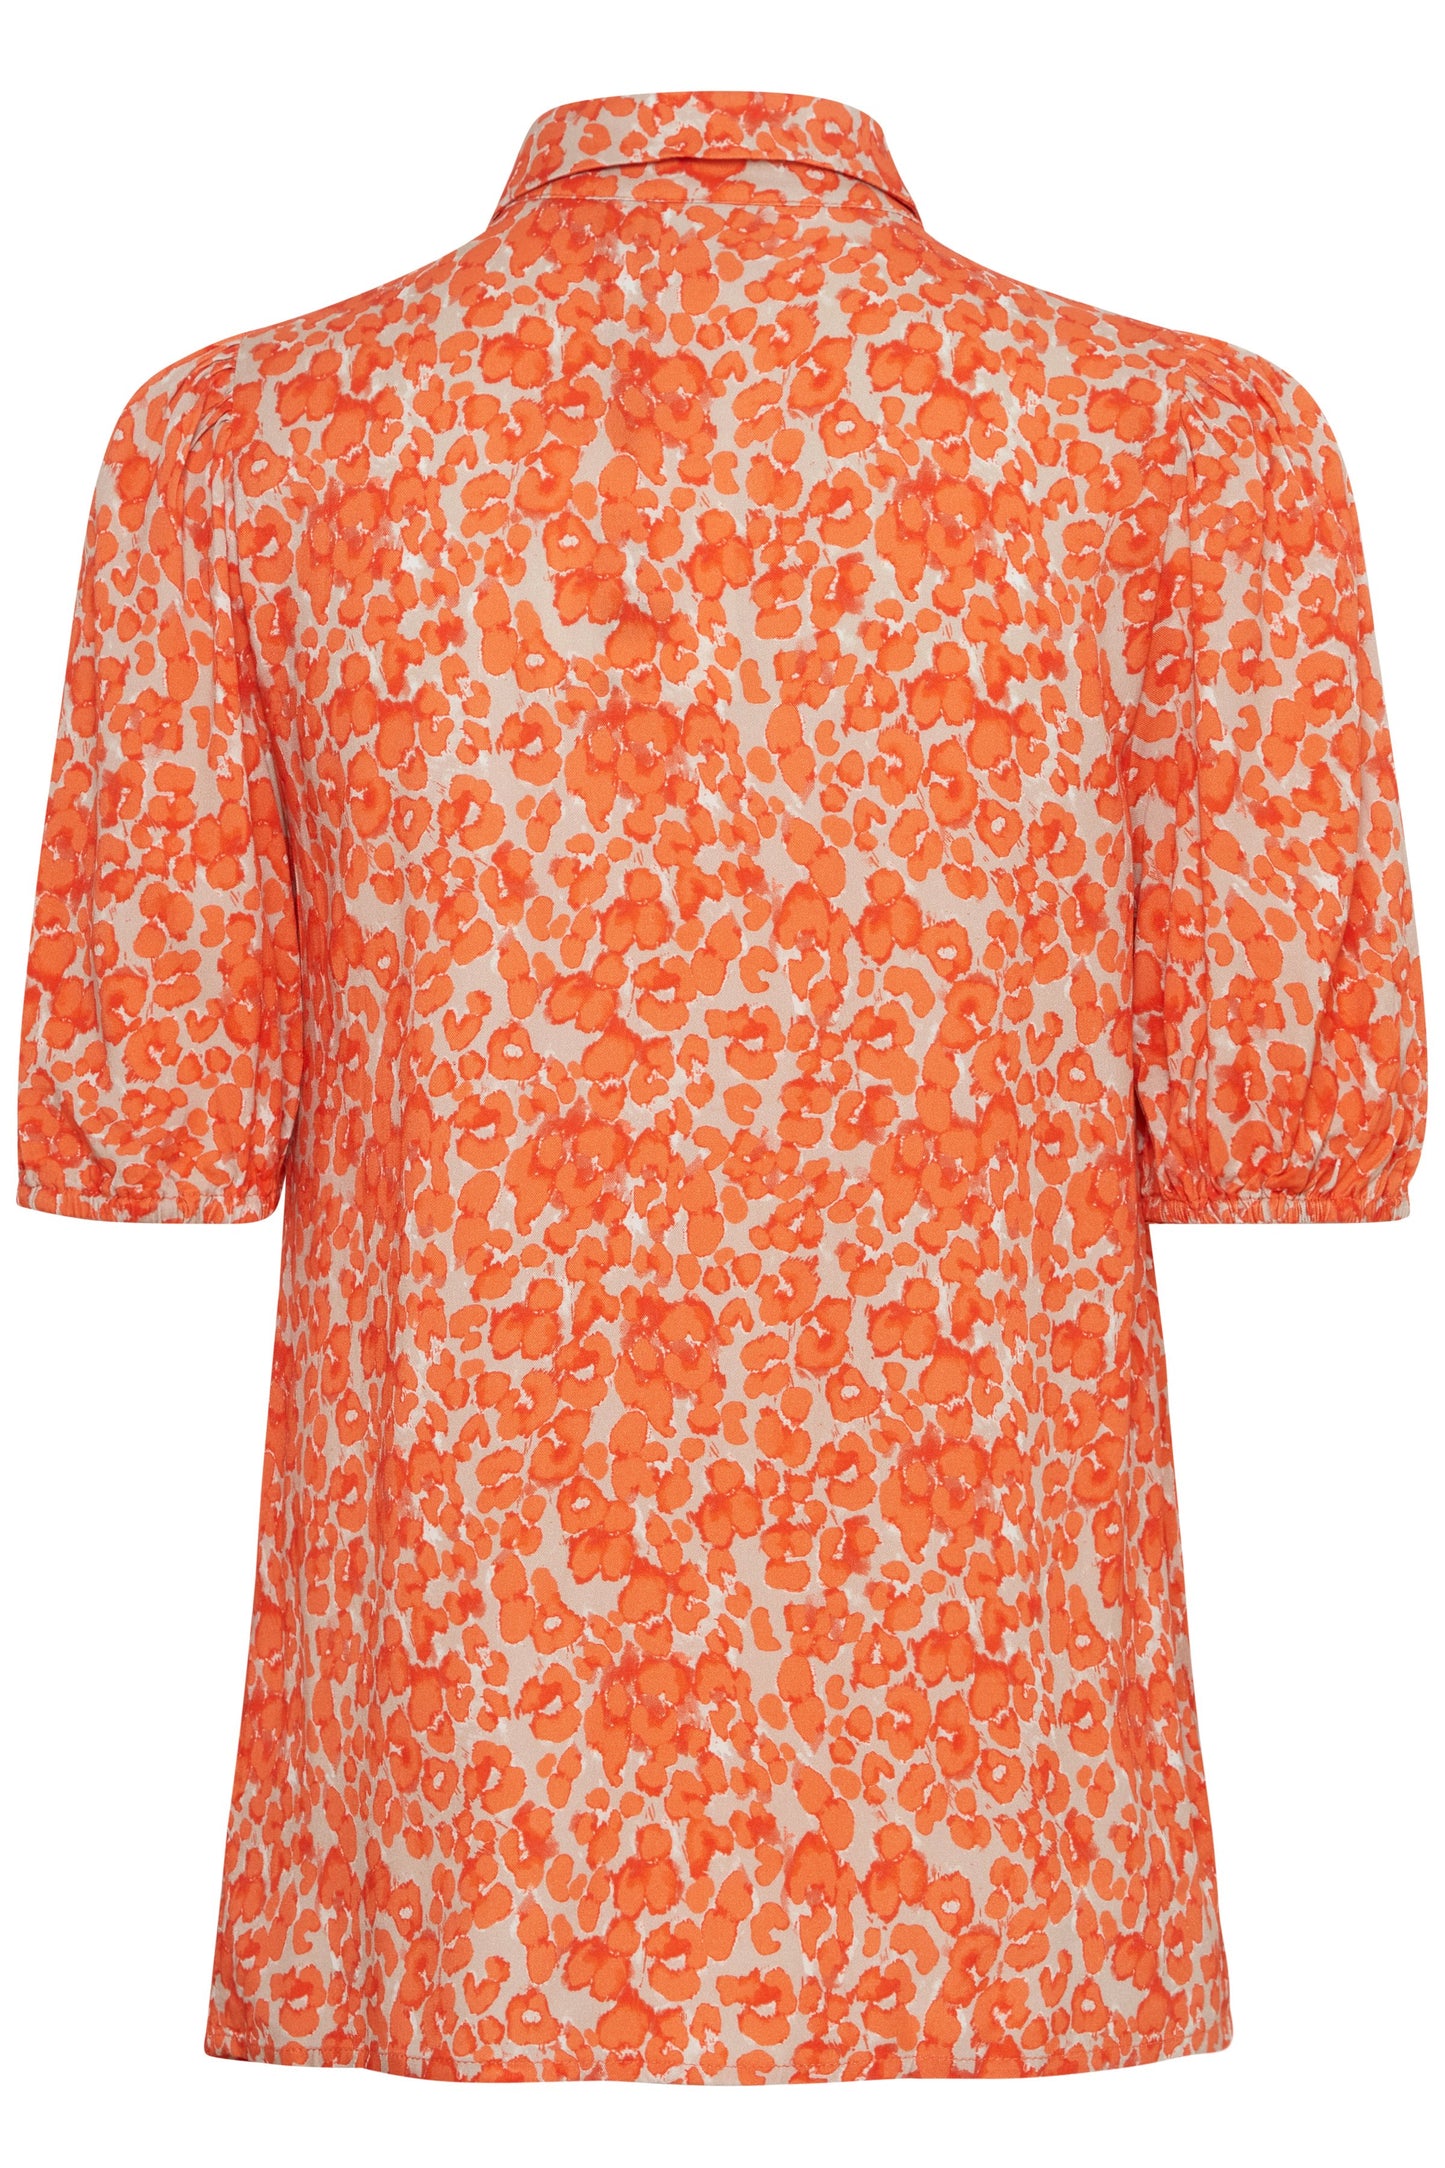 Blusa floral naranja